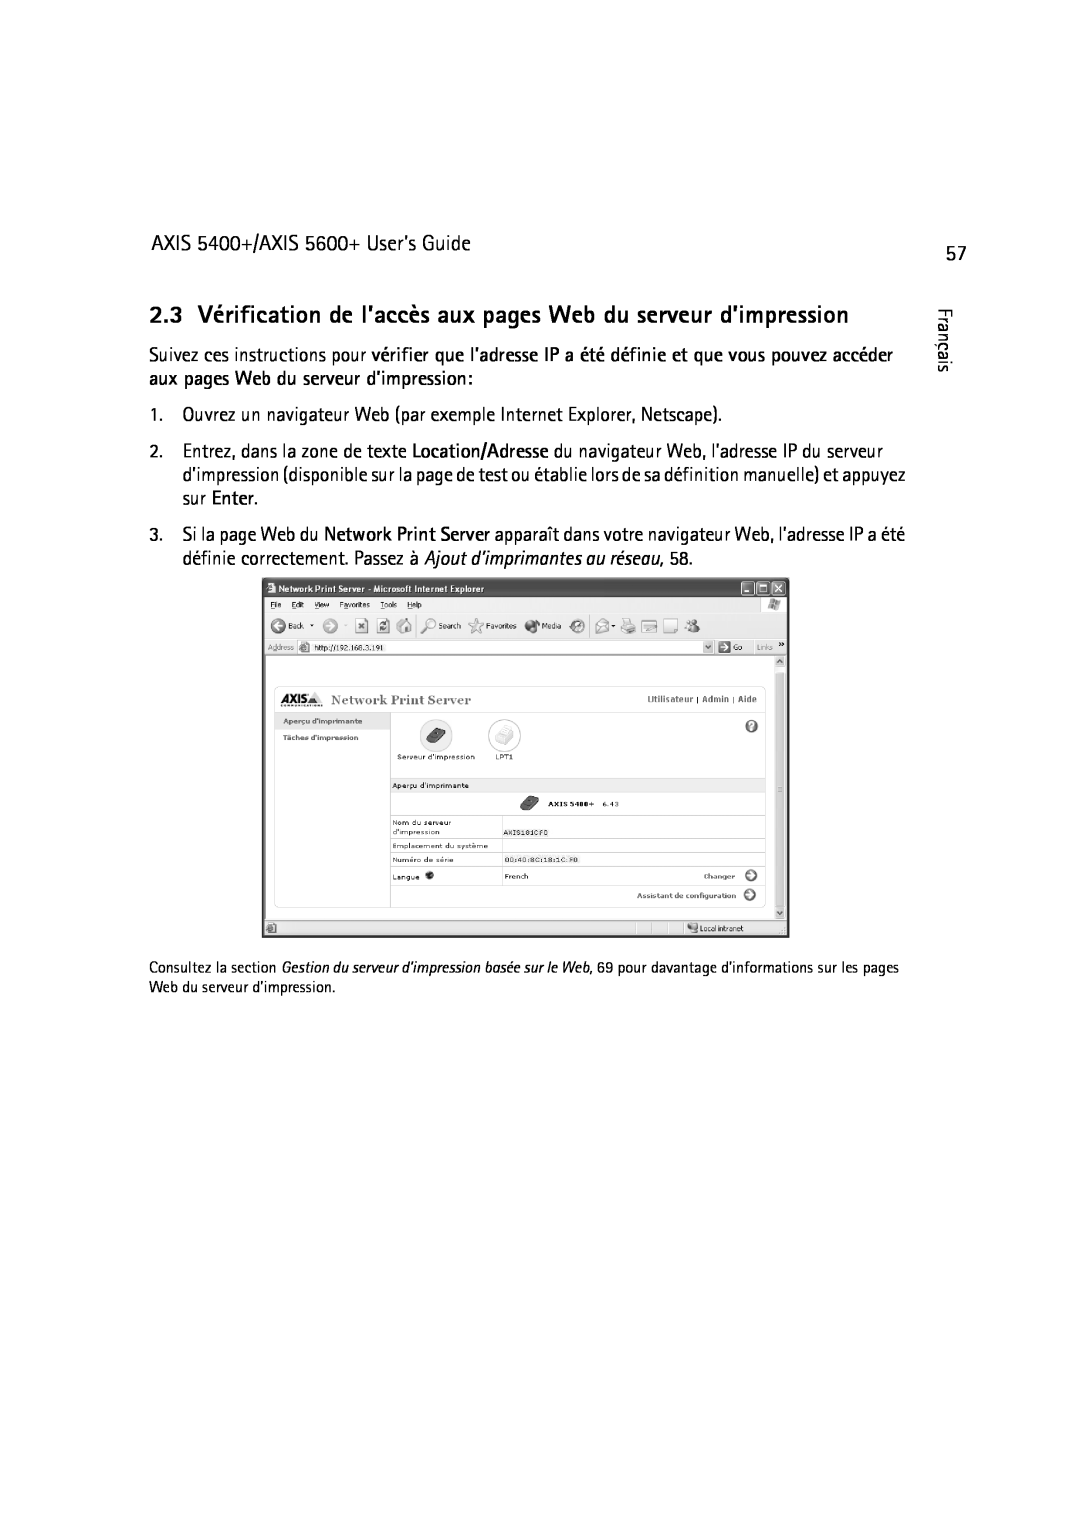 Dell manual 2.3 Vérification de l’accès aux pages Web du serveur d’impression, AXIS 5400+/AXIS 5600+ User’s Guide 